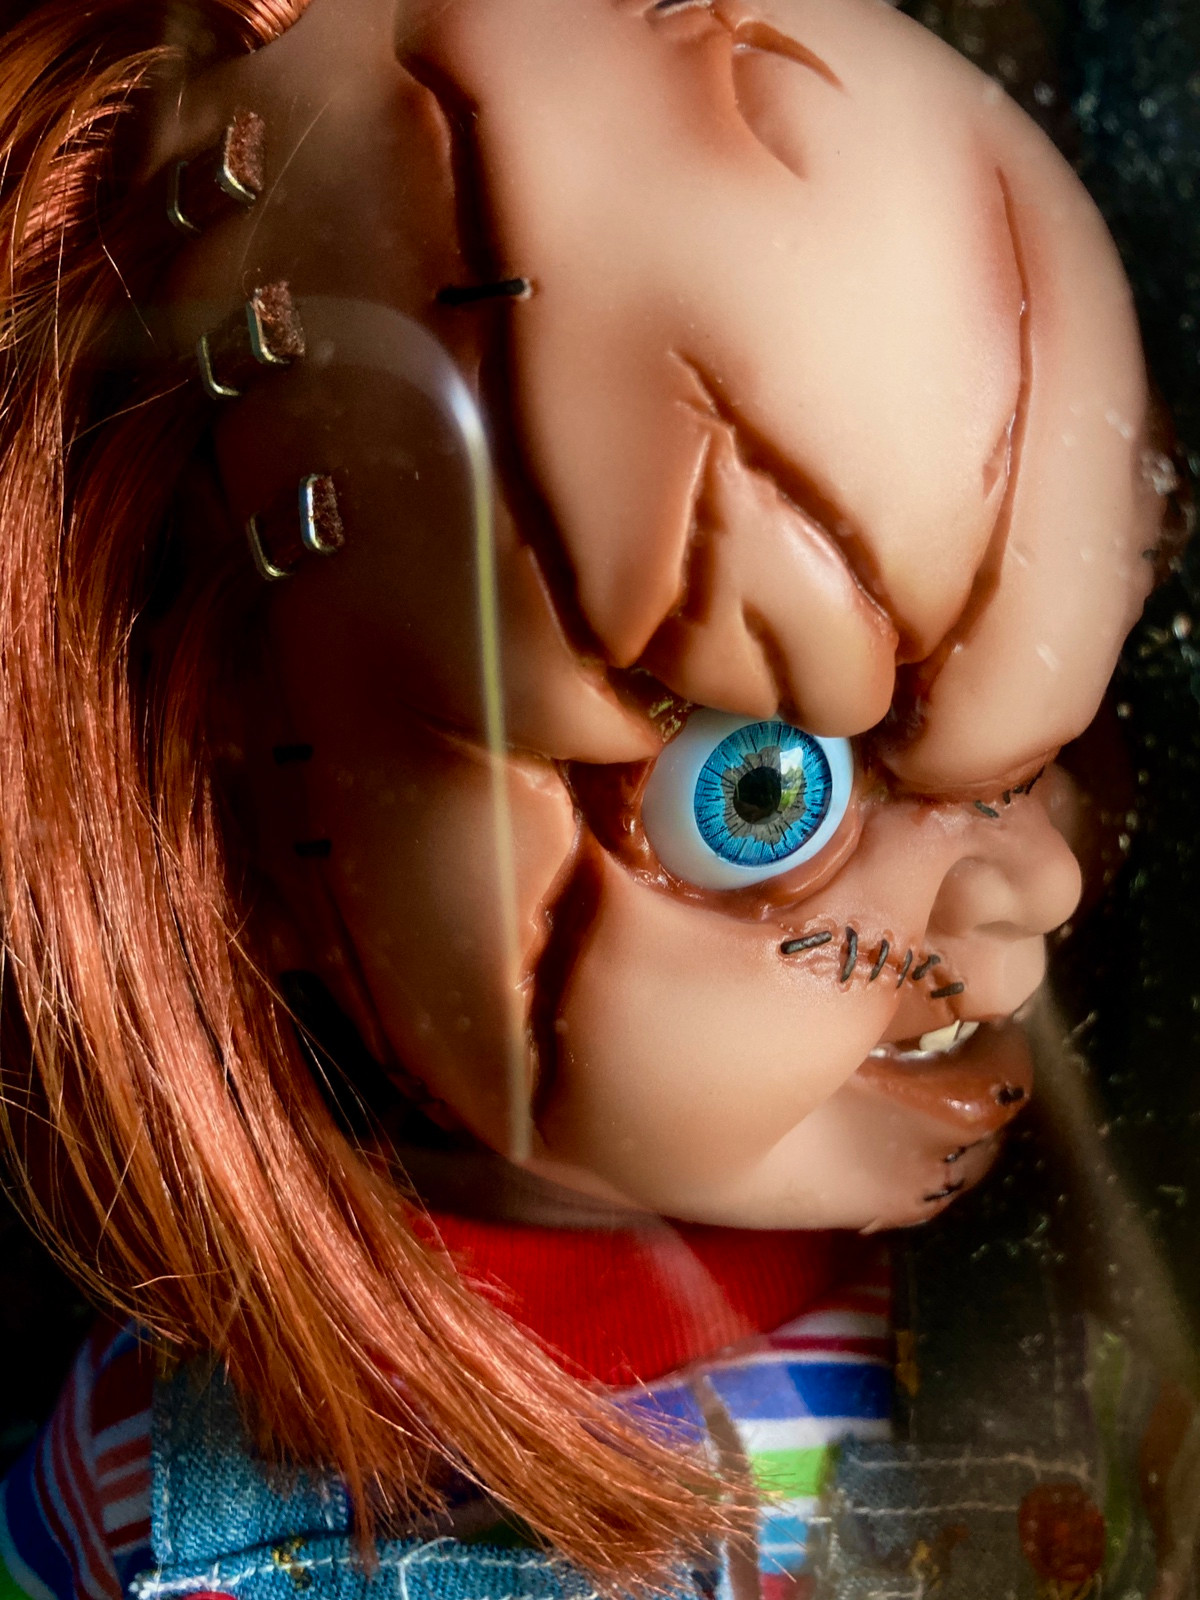 Poupée Chucky sideshow